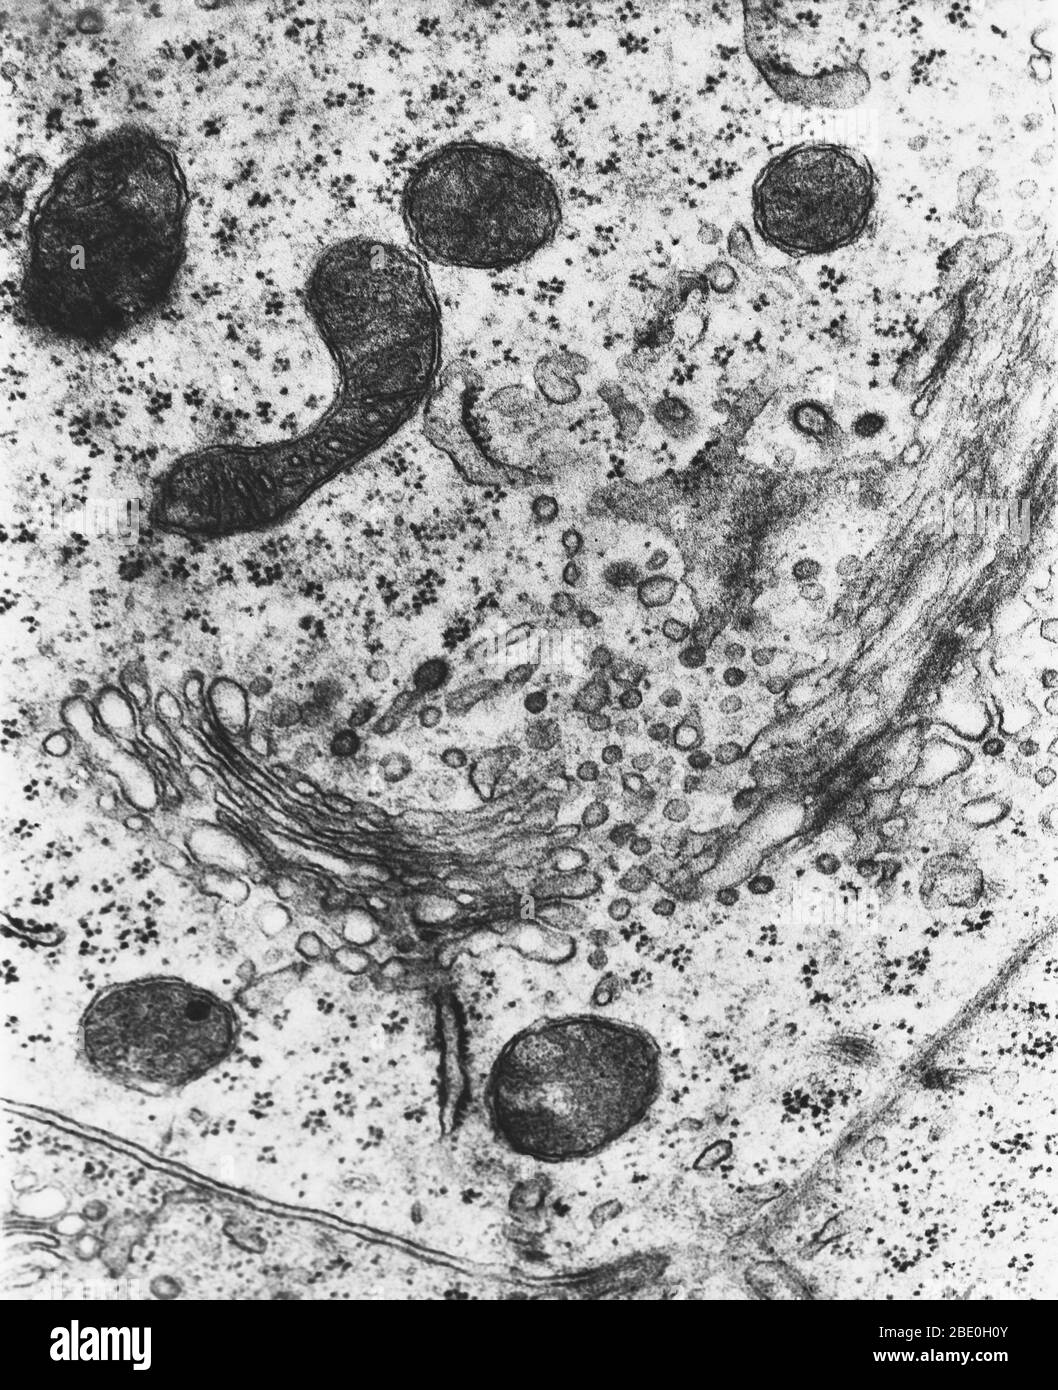 Transmissionselektronenmikrograph (TEM) von Lysosomen. Ein Lysosososososum ist ein membrangebundenes Organell, das in fast allen tierischen Zellen gefunden wird. Es sind kugelförmige Vesikel, die hydrolytische Enzyme enthalten, die praktisch alle Arten von Biomolekülen (Abfallstoffe und Zellreste) abbauen können. Der Name lysosome leitet sich von den griechischen Wörtern lysis, zu trennen und soma, Körper ab. Sie werden häufig als "Suizid-Beutel" oder "Suizid-Beutel" von Zellbiologen wegen ihrer Rolle in der Autolyse, besser bekannt als Selbstverdauung, bezieht sich auf die Zerstörung einer Zelle durch die Wirkung ihrer eigenen Enzyme Spitznamen. Magni Stockfoto